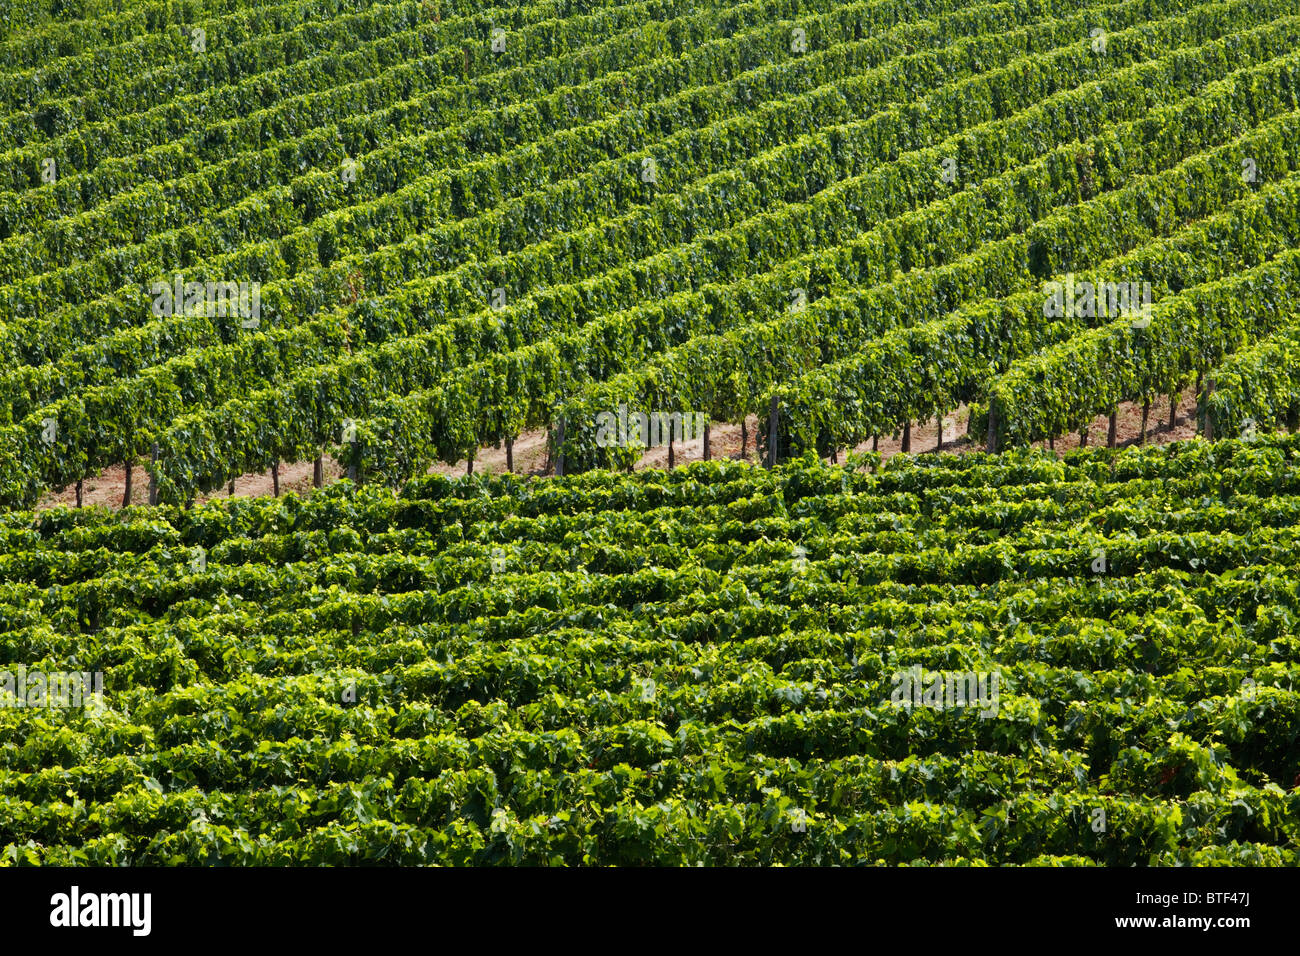 Vineyard near Montepulciano, Tuscany, Italy Stock Photo